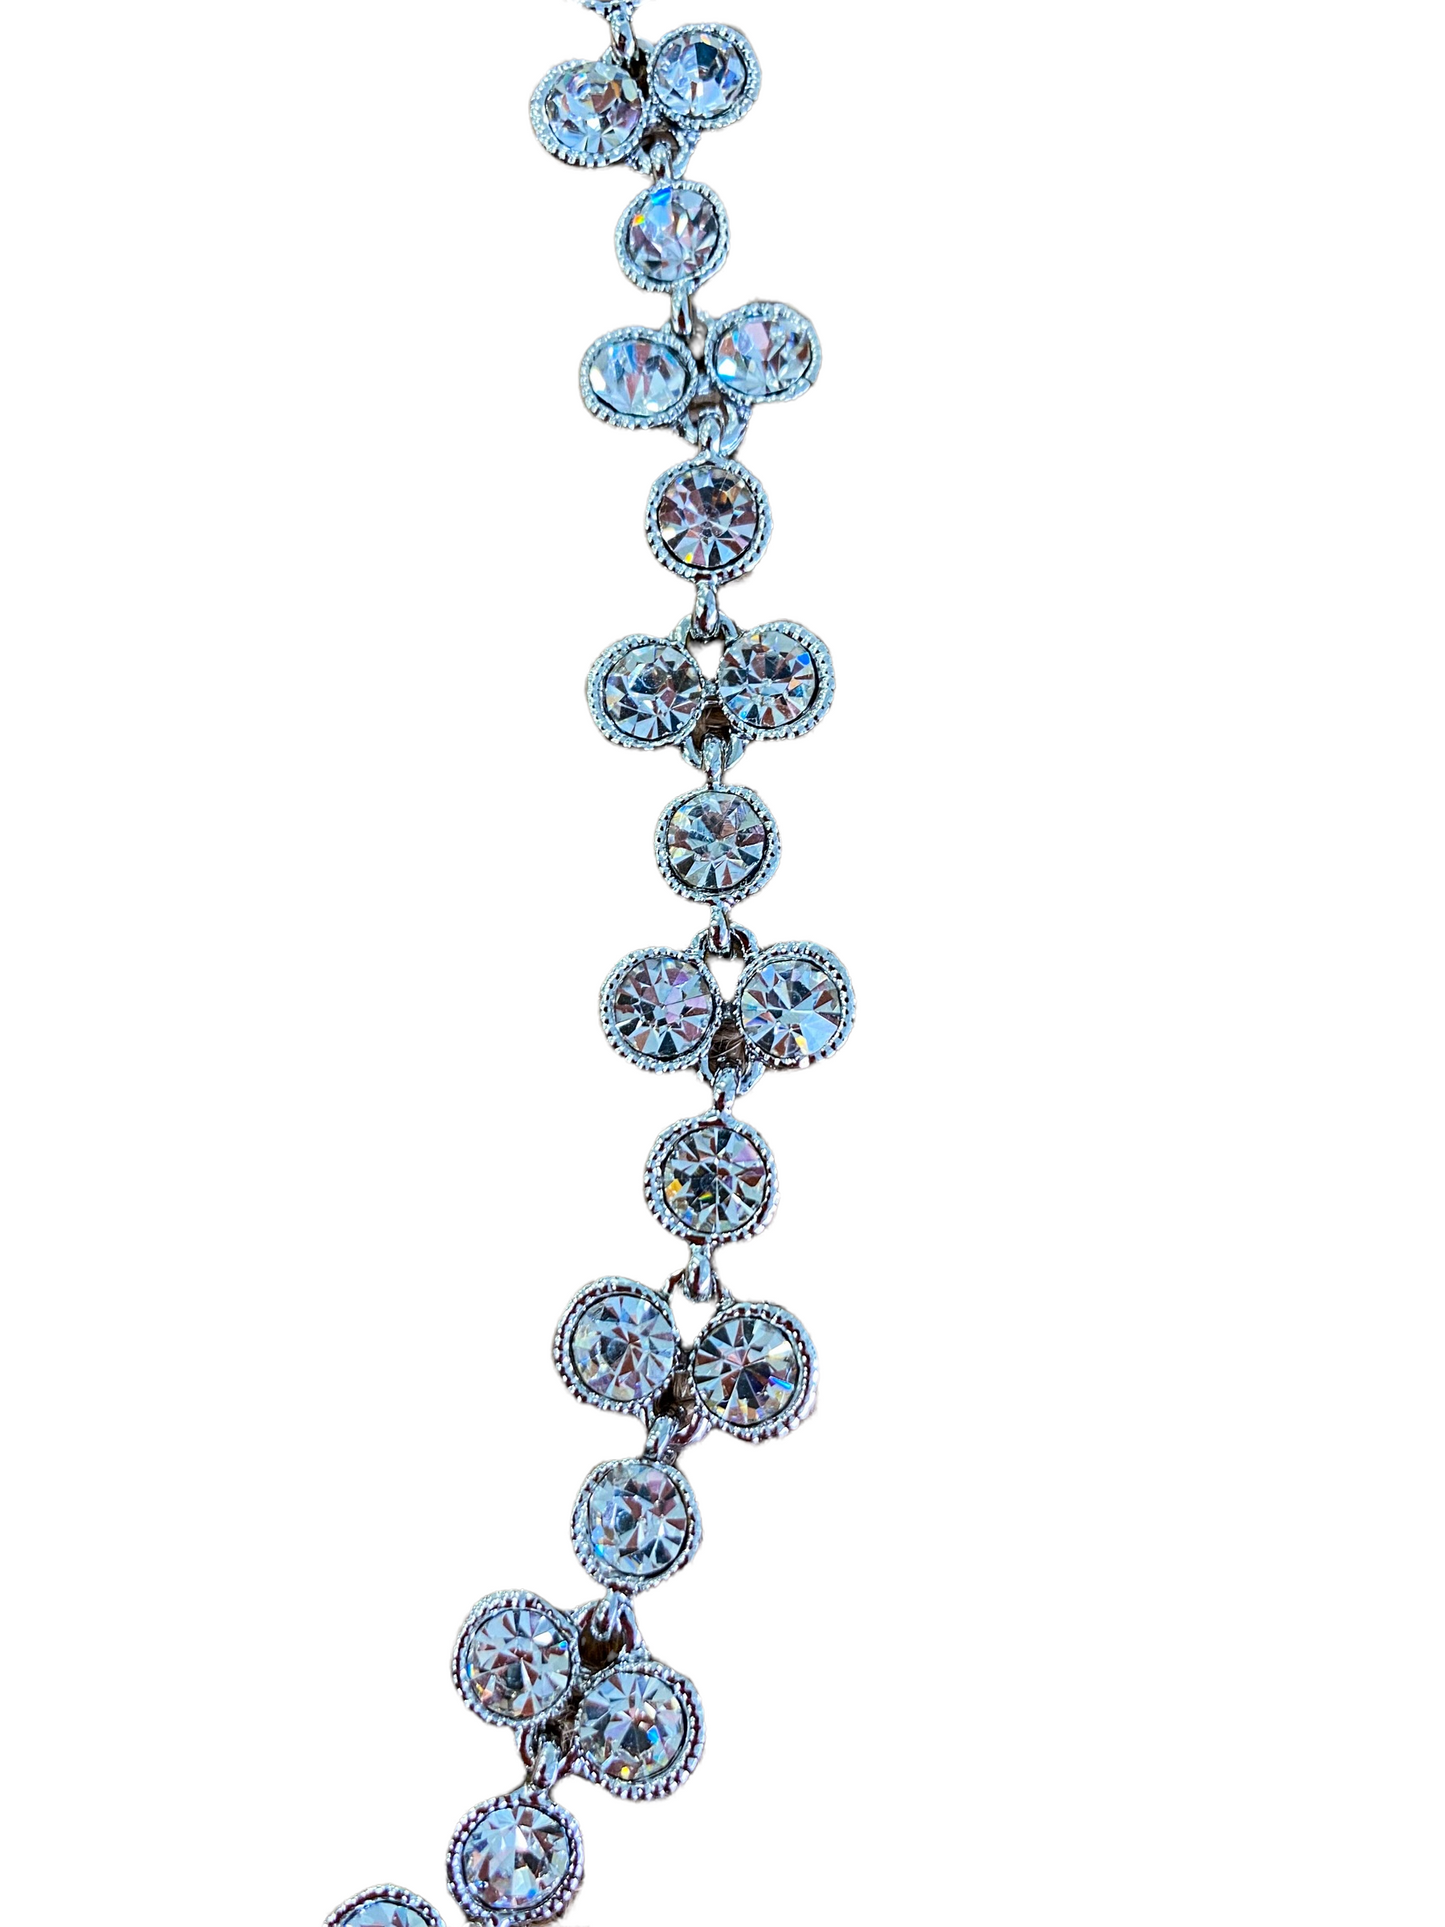 Chrysalini Diamanté Necklace